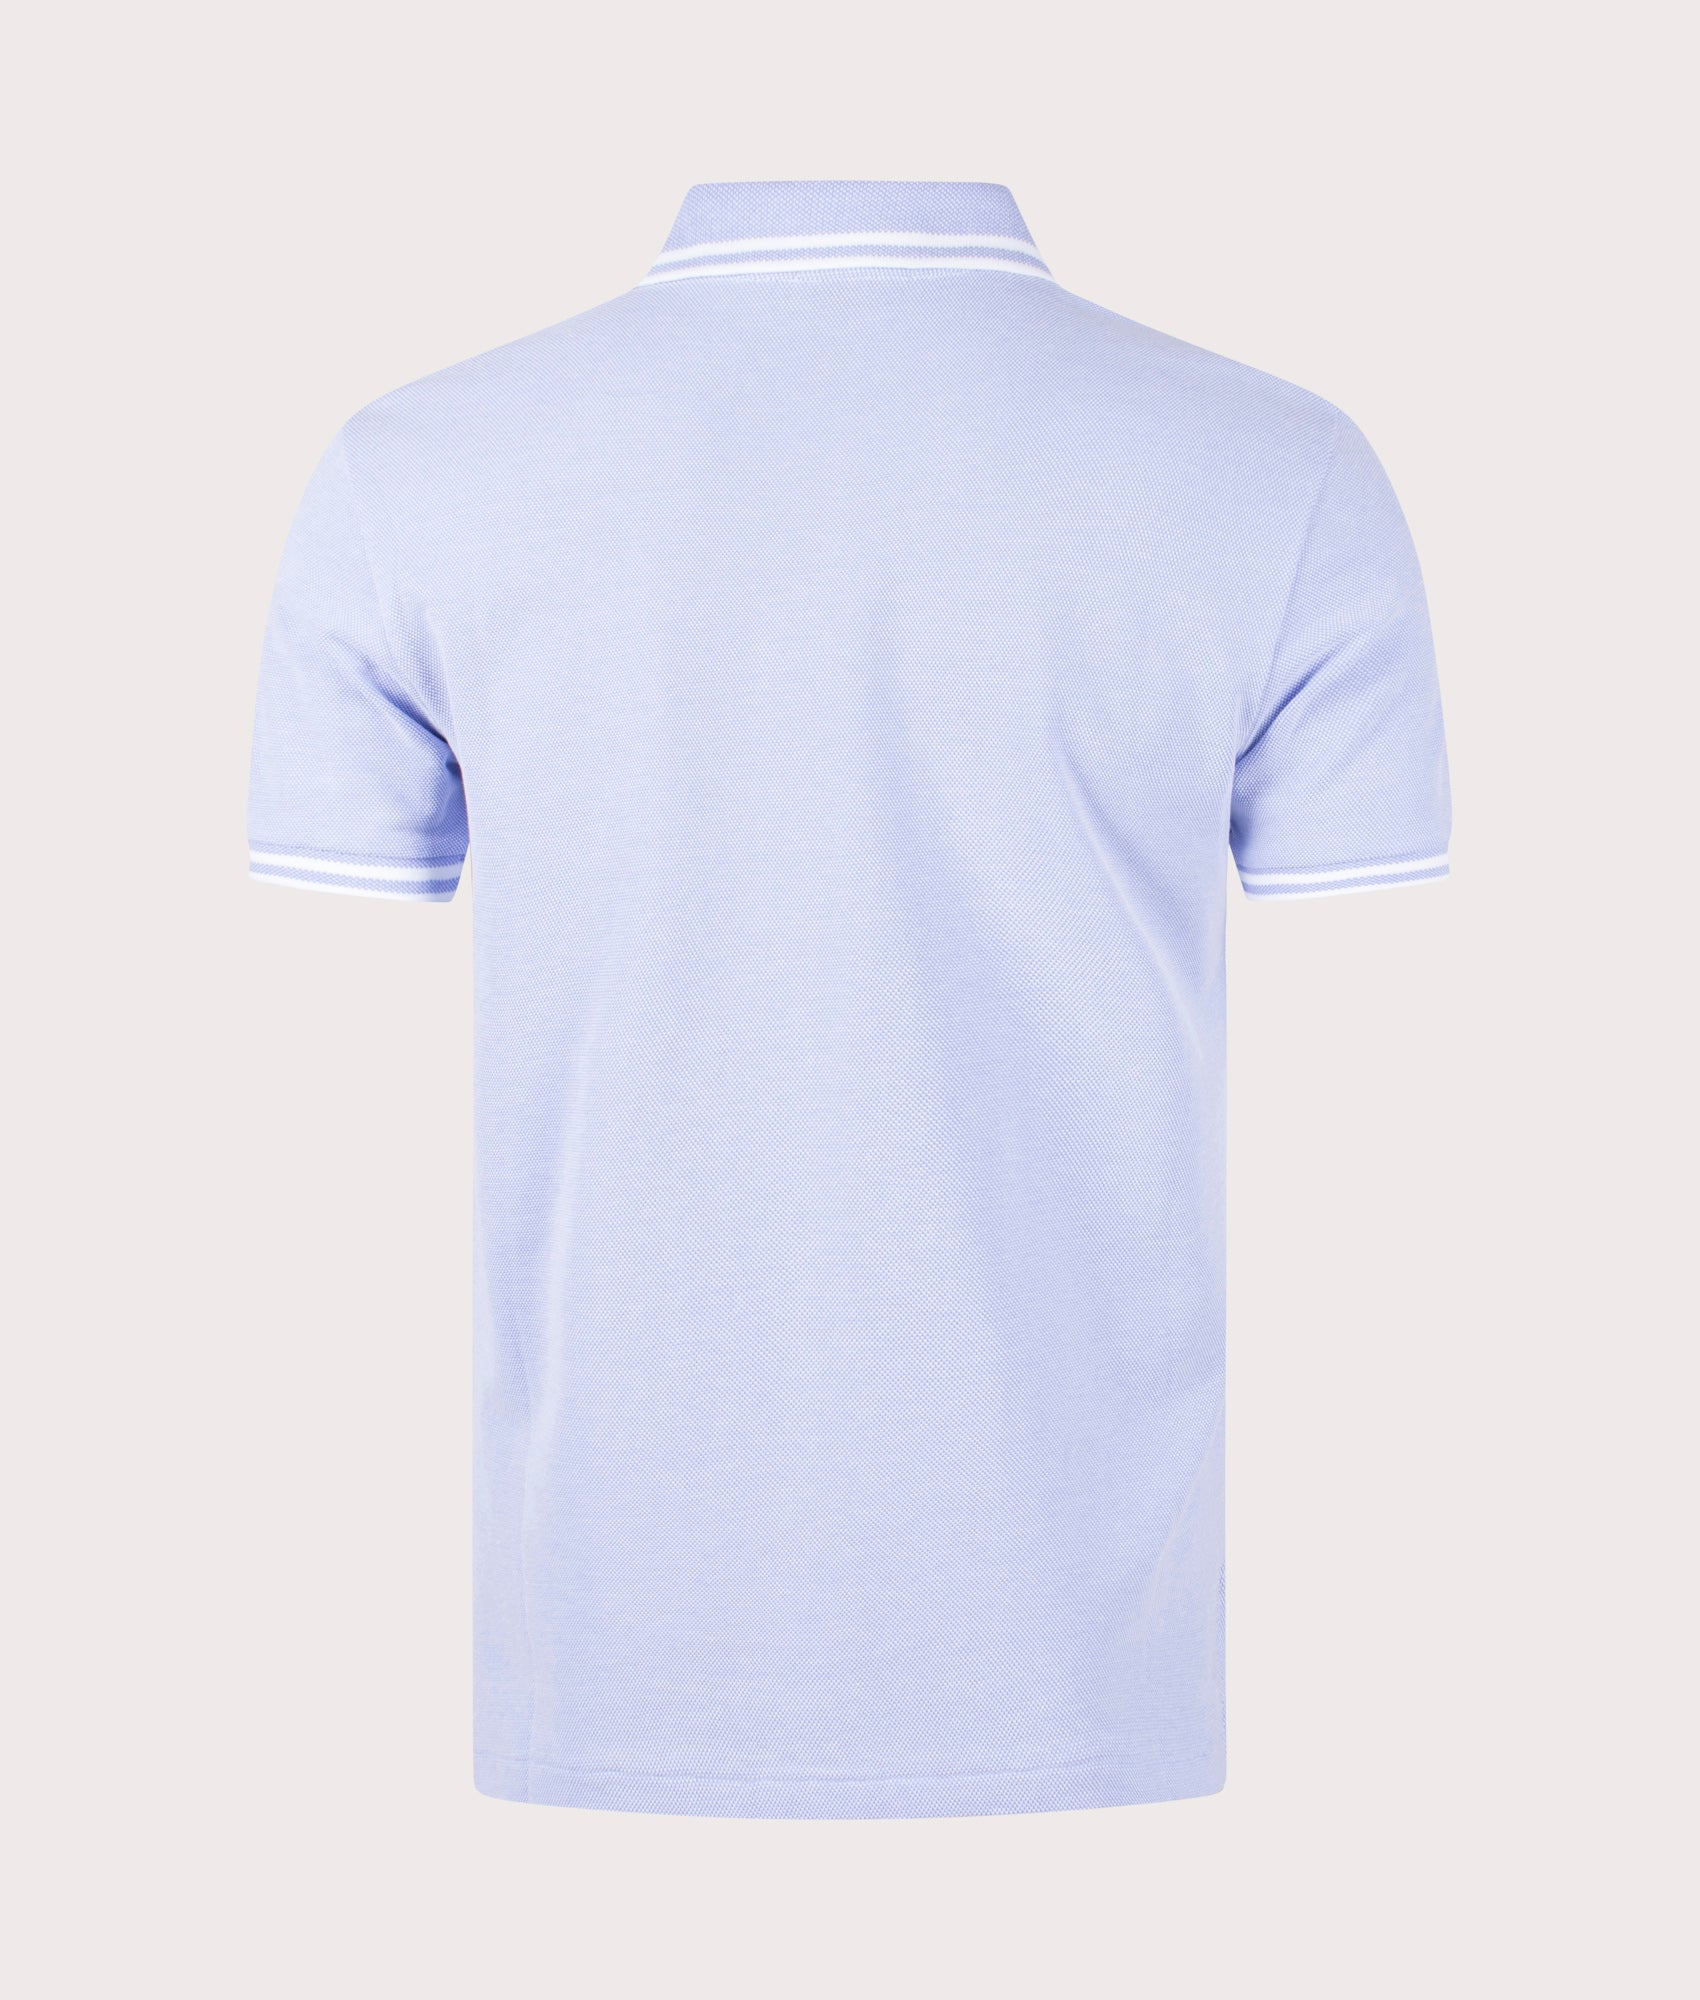 Mesh Polo Shirt Lafayette Blue/White | Polo Ralph Lauren | EQVVS